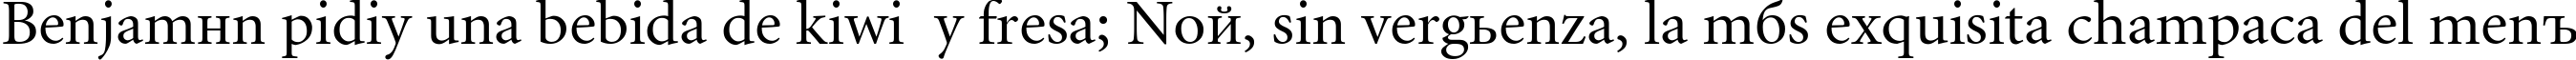 Пример написания шрифтом MinionCyr-Regular текста на испанском